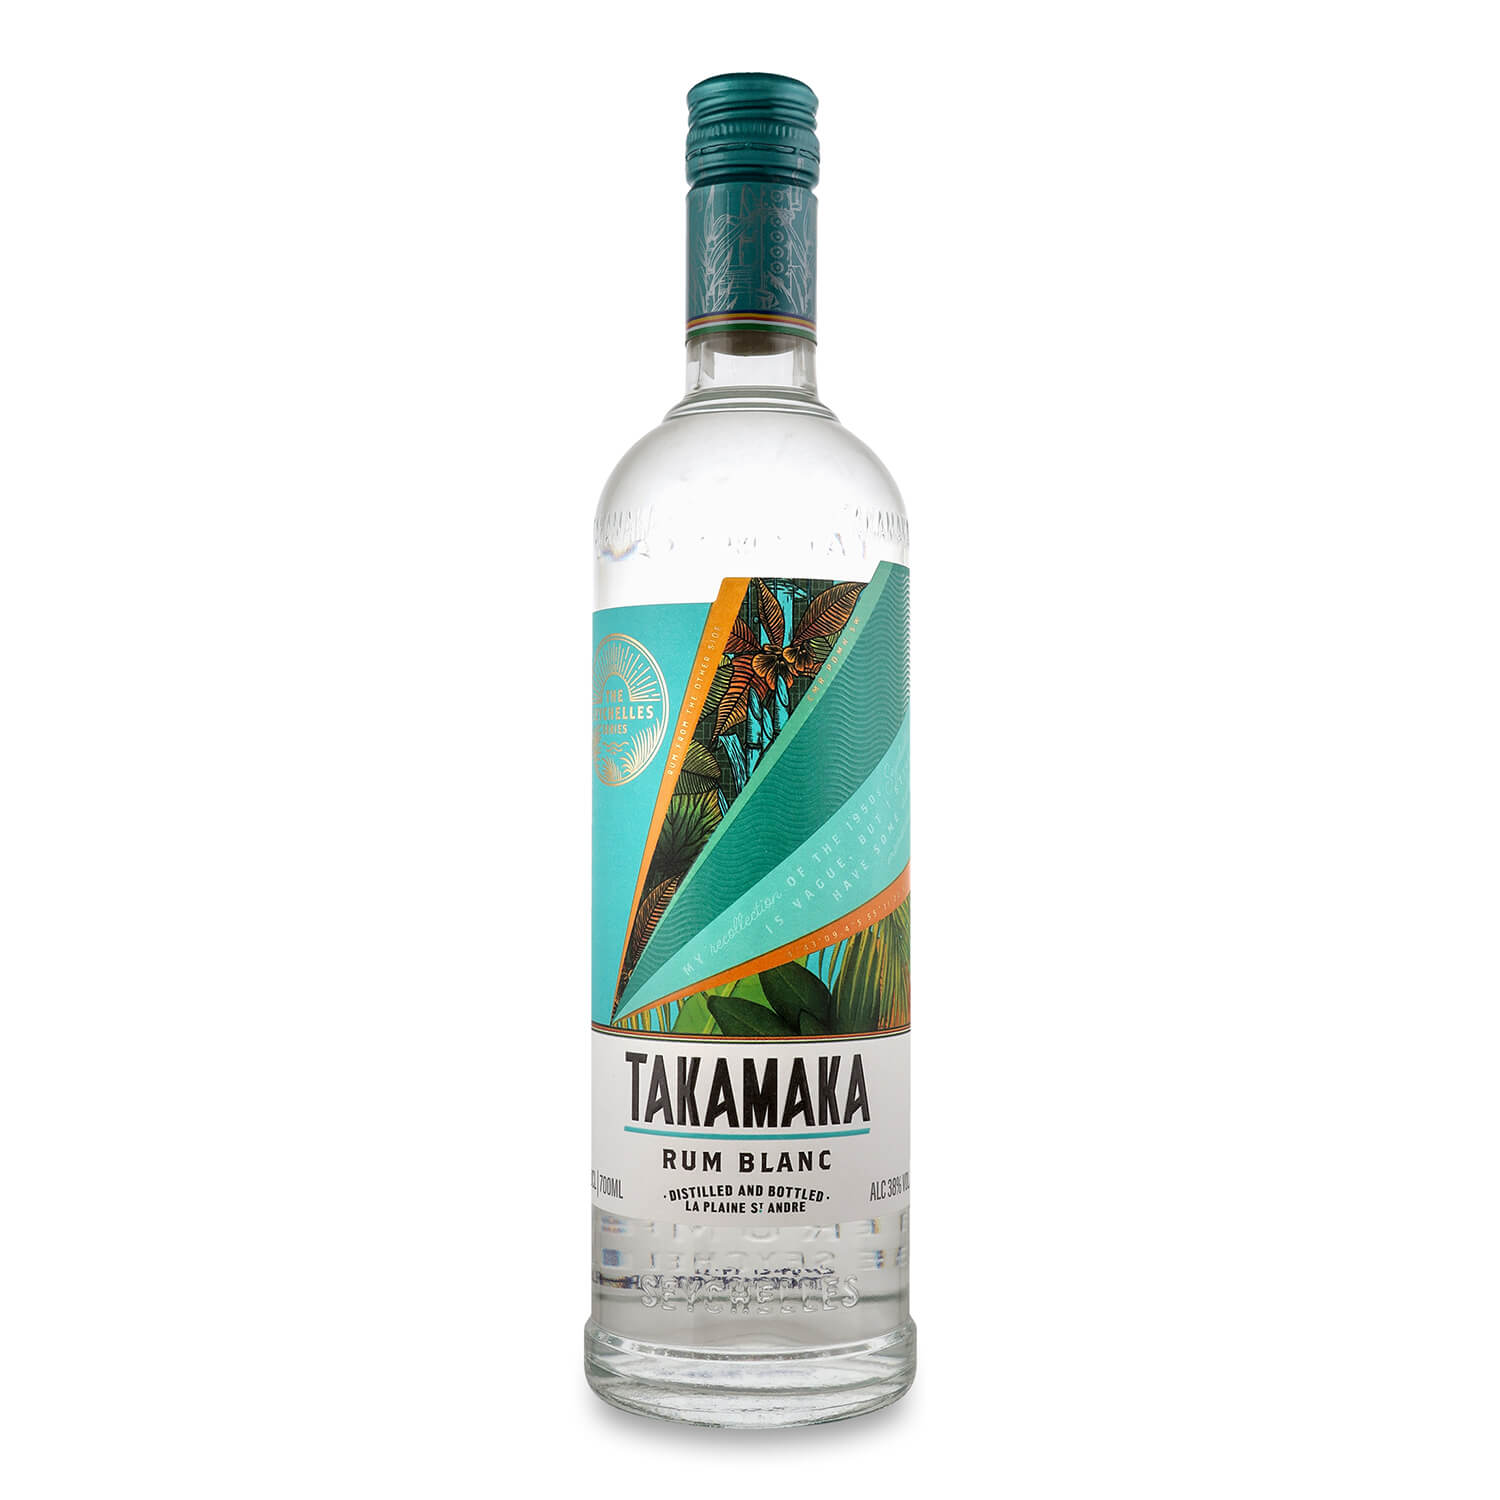 Ромовий напій Takamaka Rum Blanc, 38%, 0,7 л (871948) - фото 1